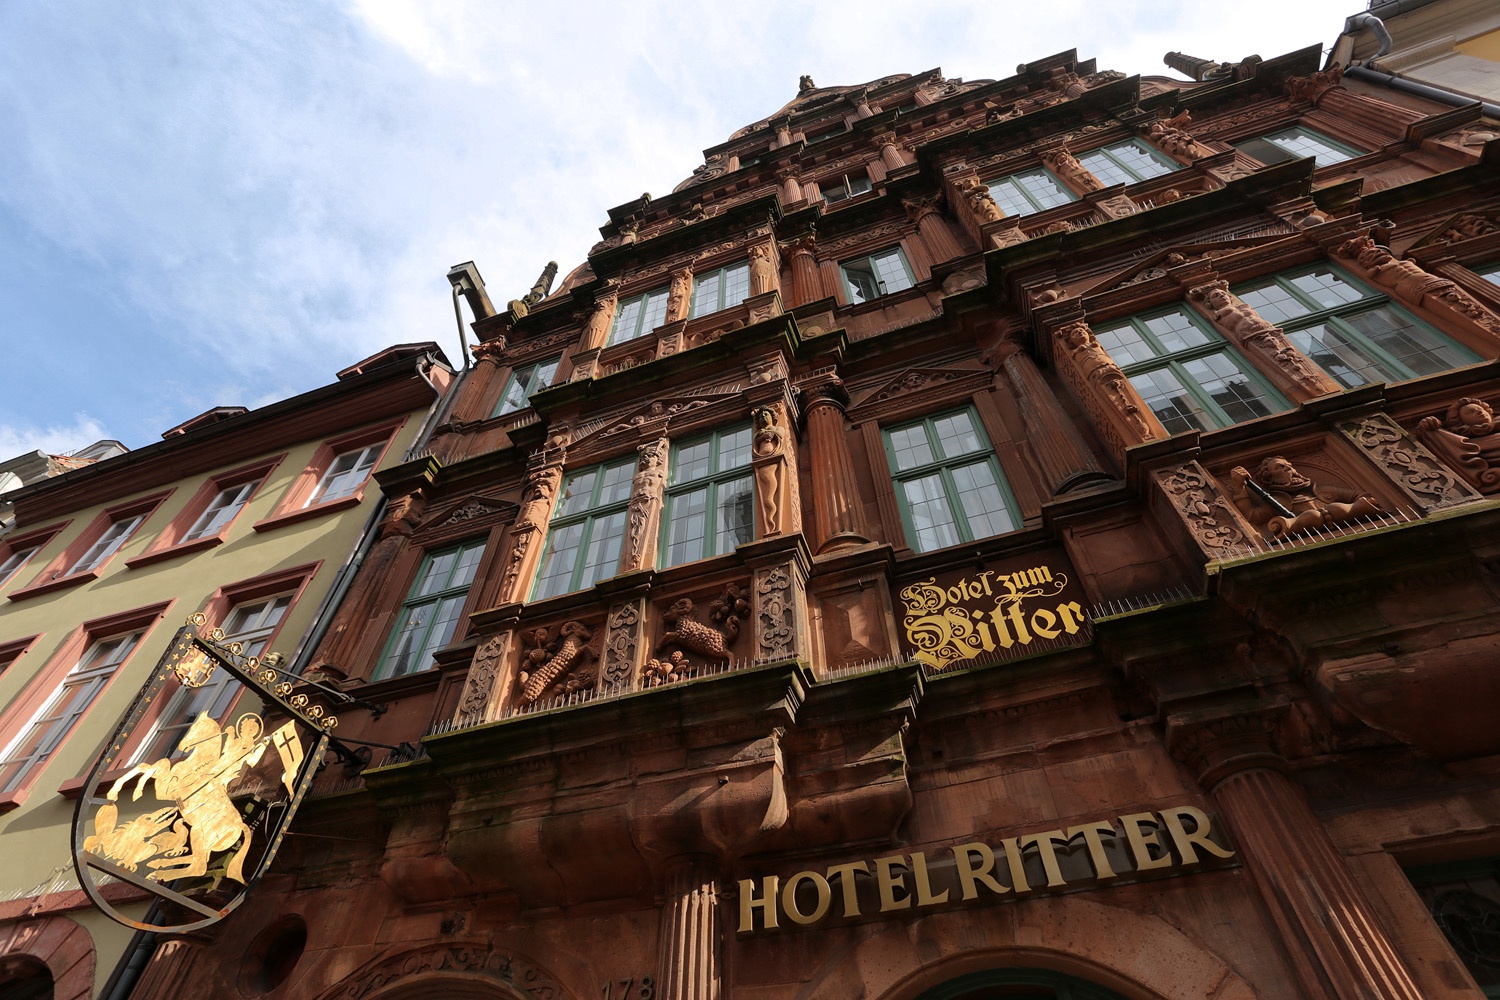 bill-hocker-hotel-zum-ritter-heidelberg-germany-2016